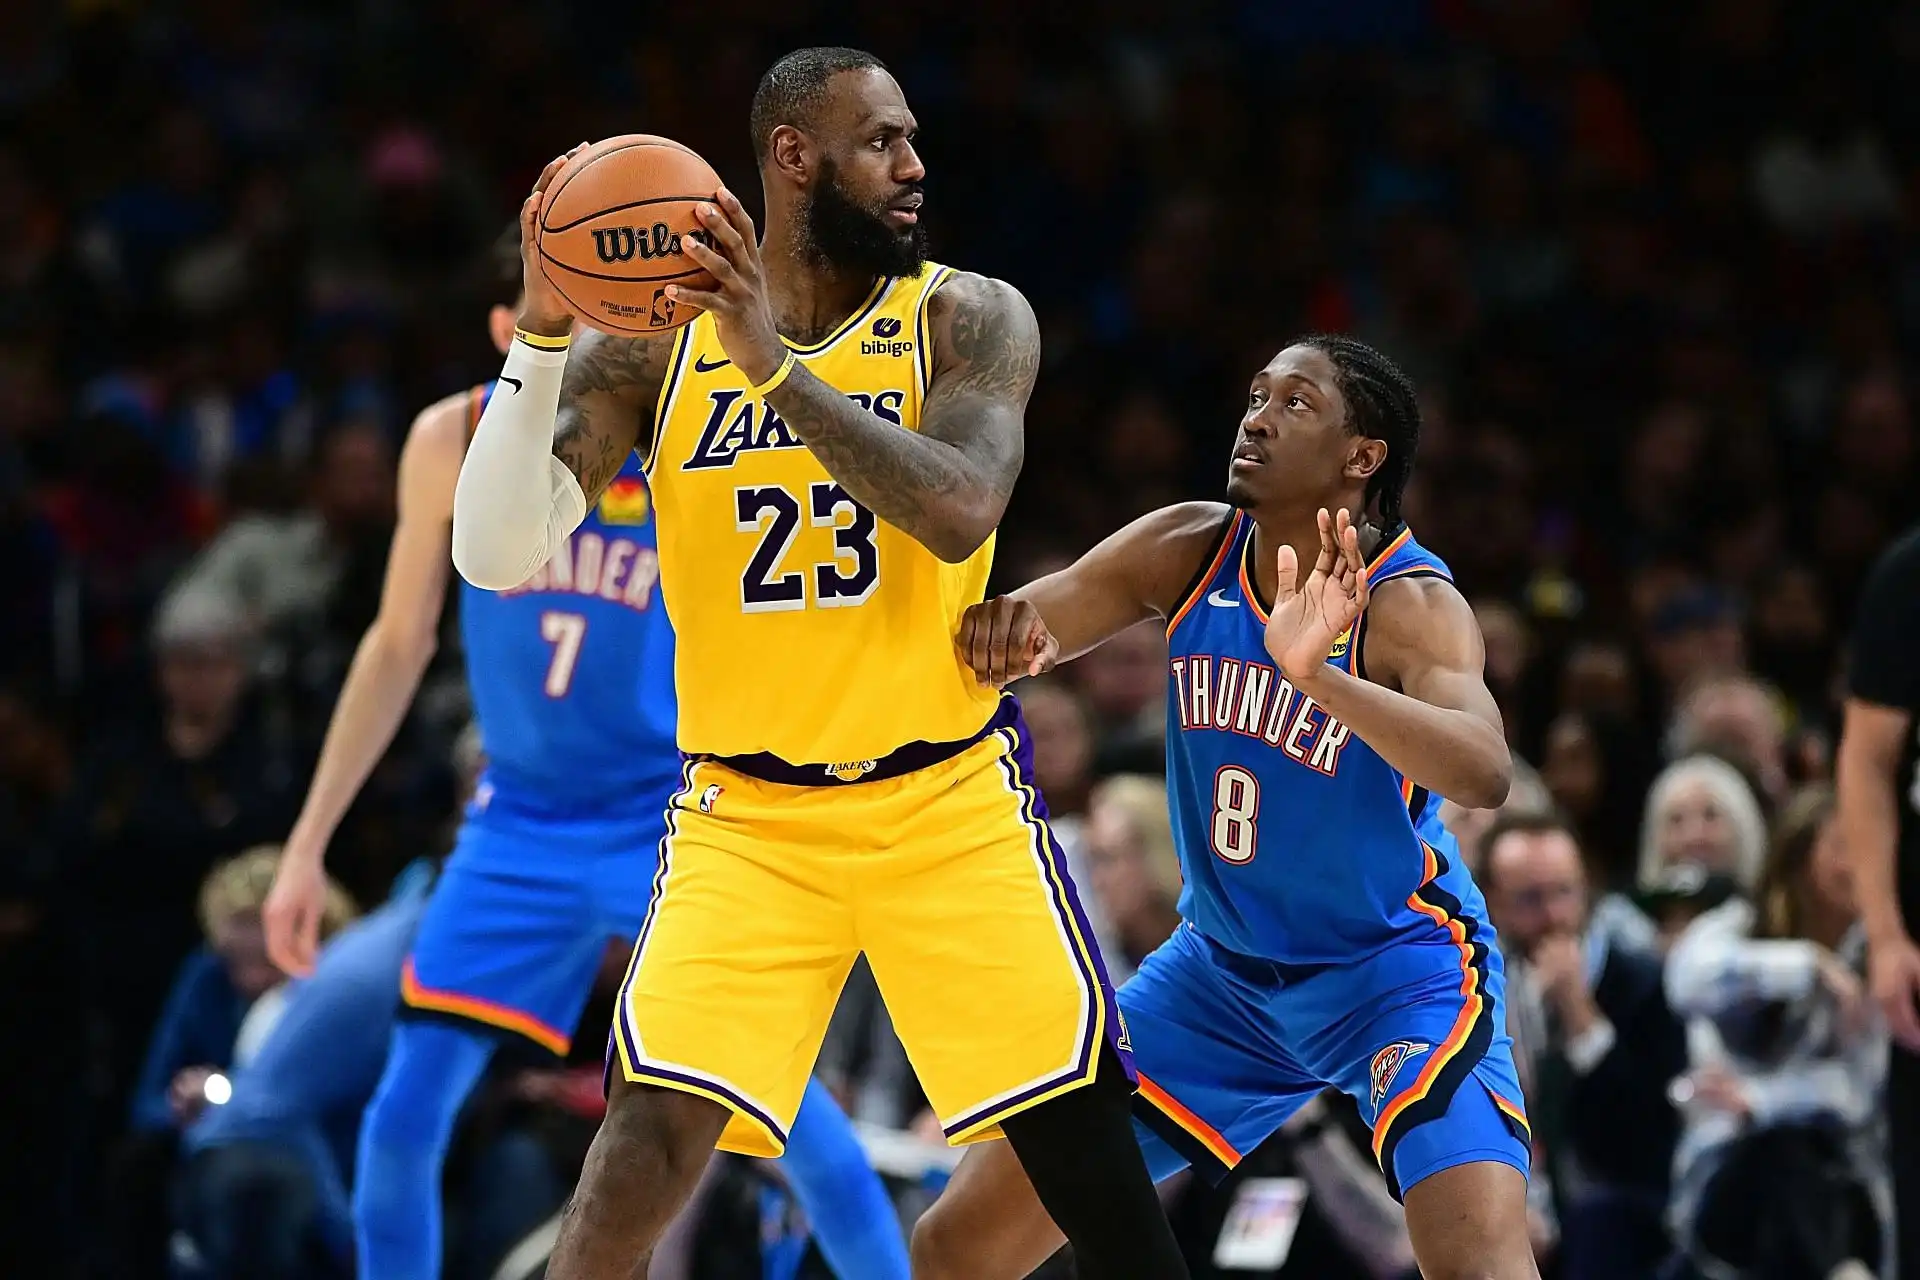 Mira el partido de baloncesto de la NBA LA Lakers vs OKC Thunder esta noche: canal de televisión, opciones de transmisión y más